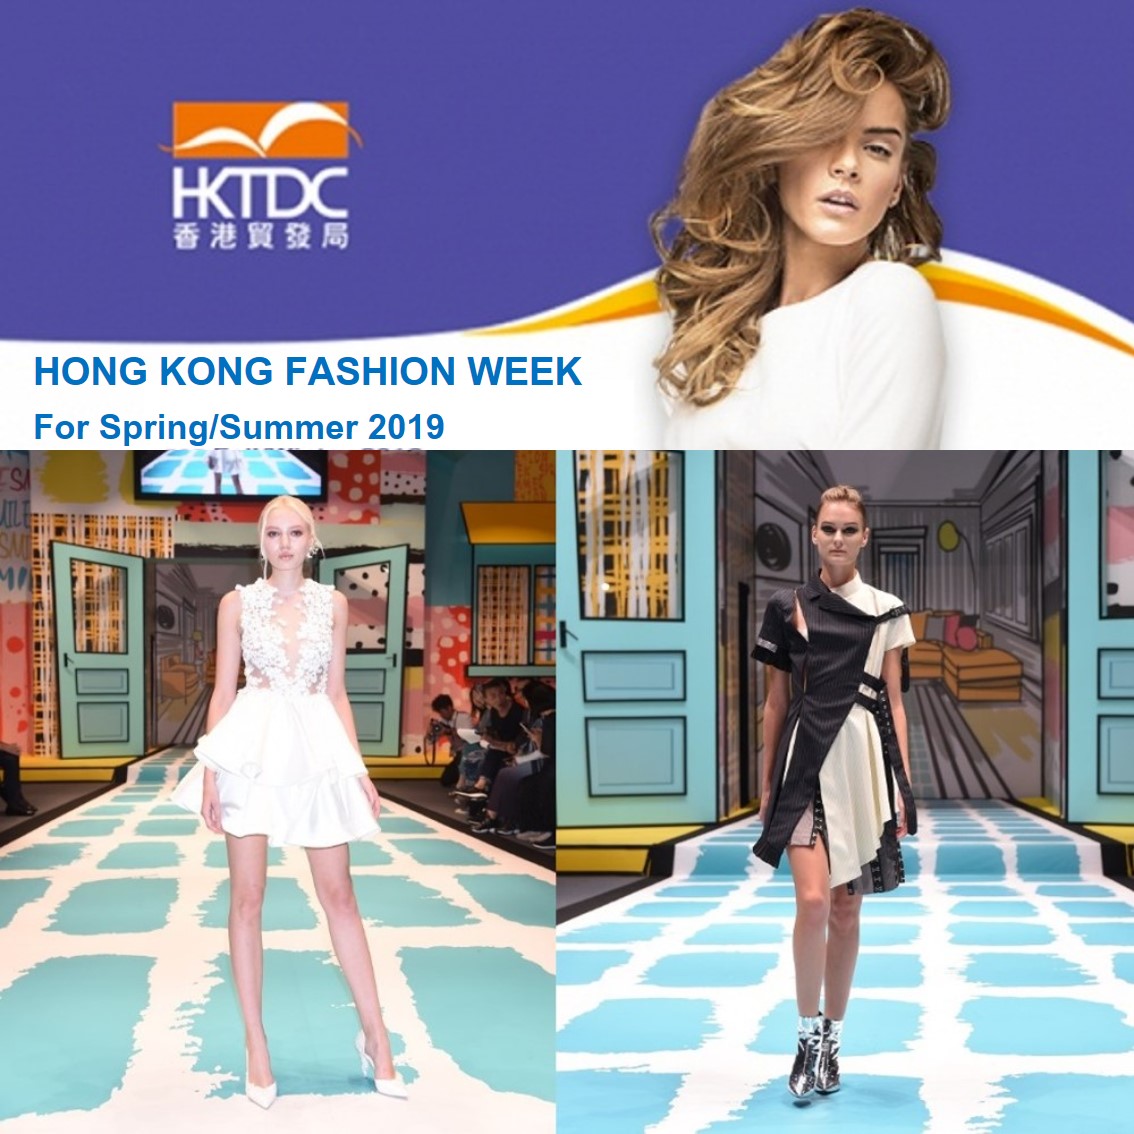 Hong Kong Fashion Week for Spring/Summer 2019